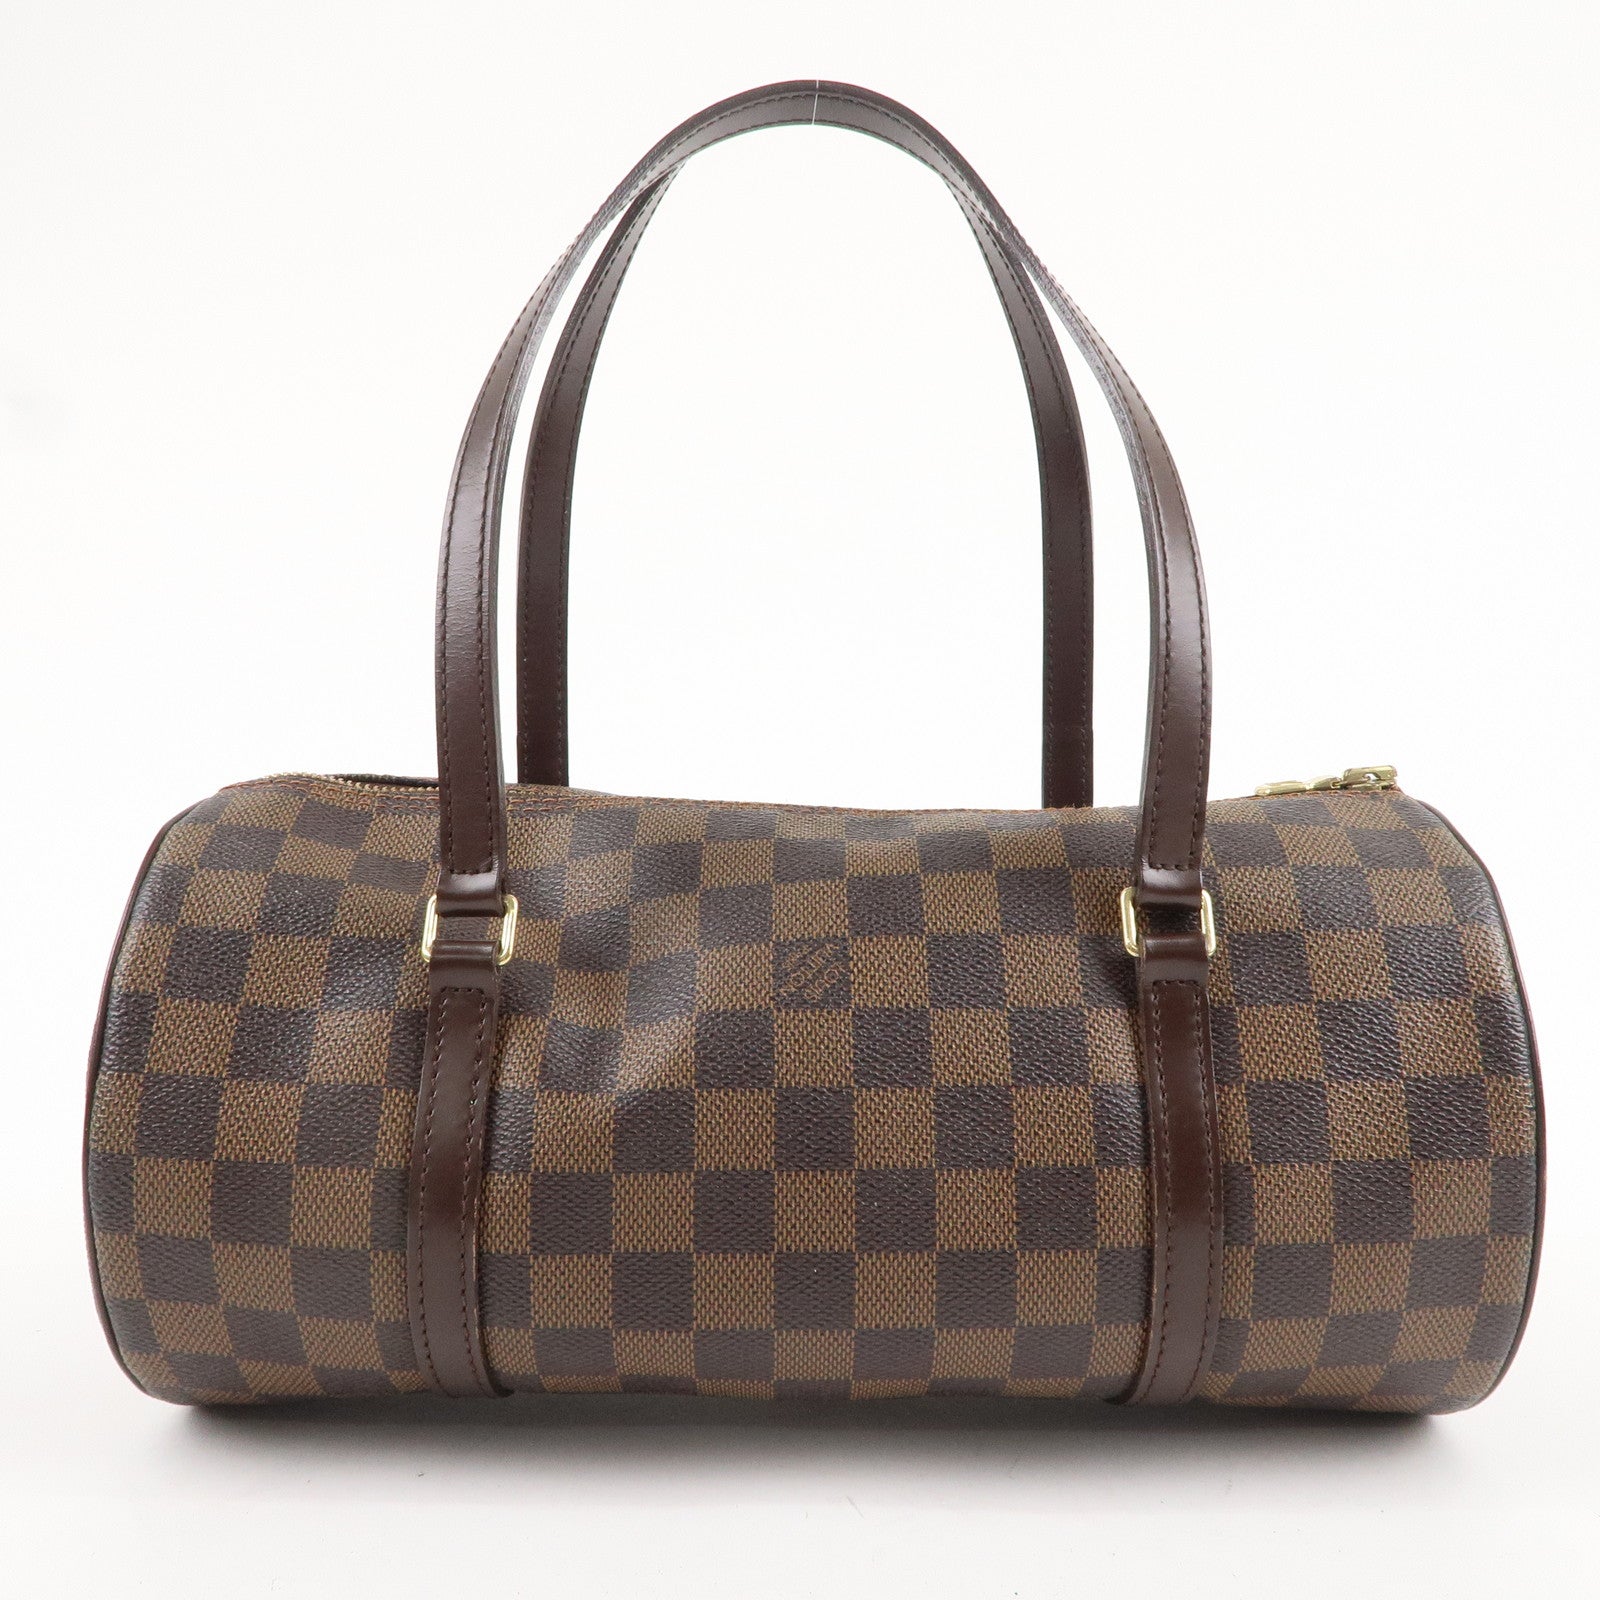 Authentic Louis Vuitton Papillon 30 Handbag in Damier